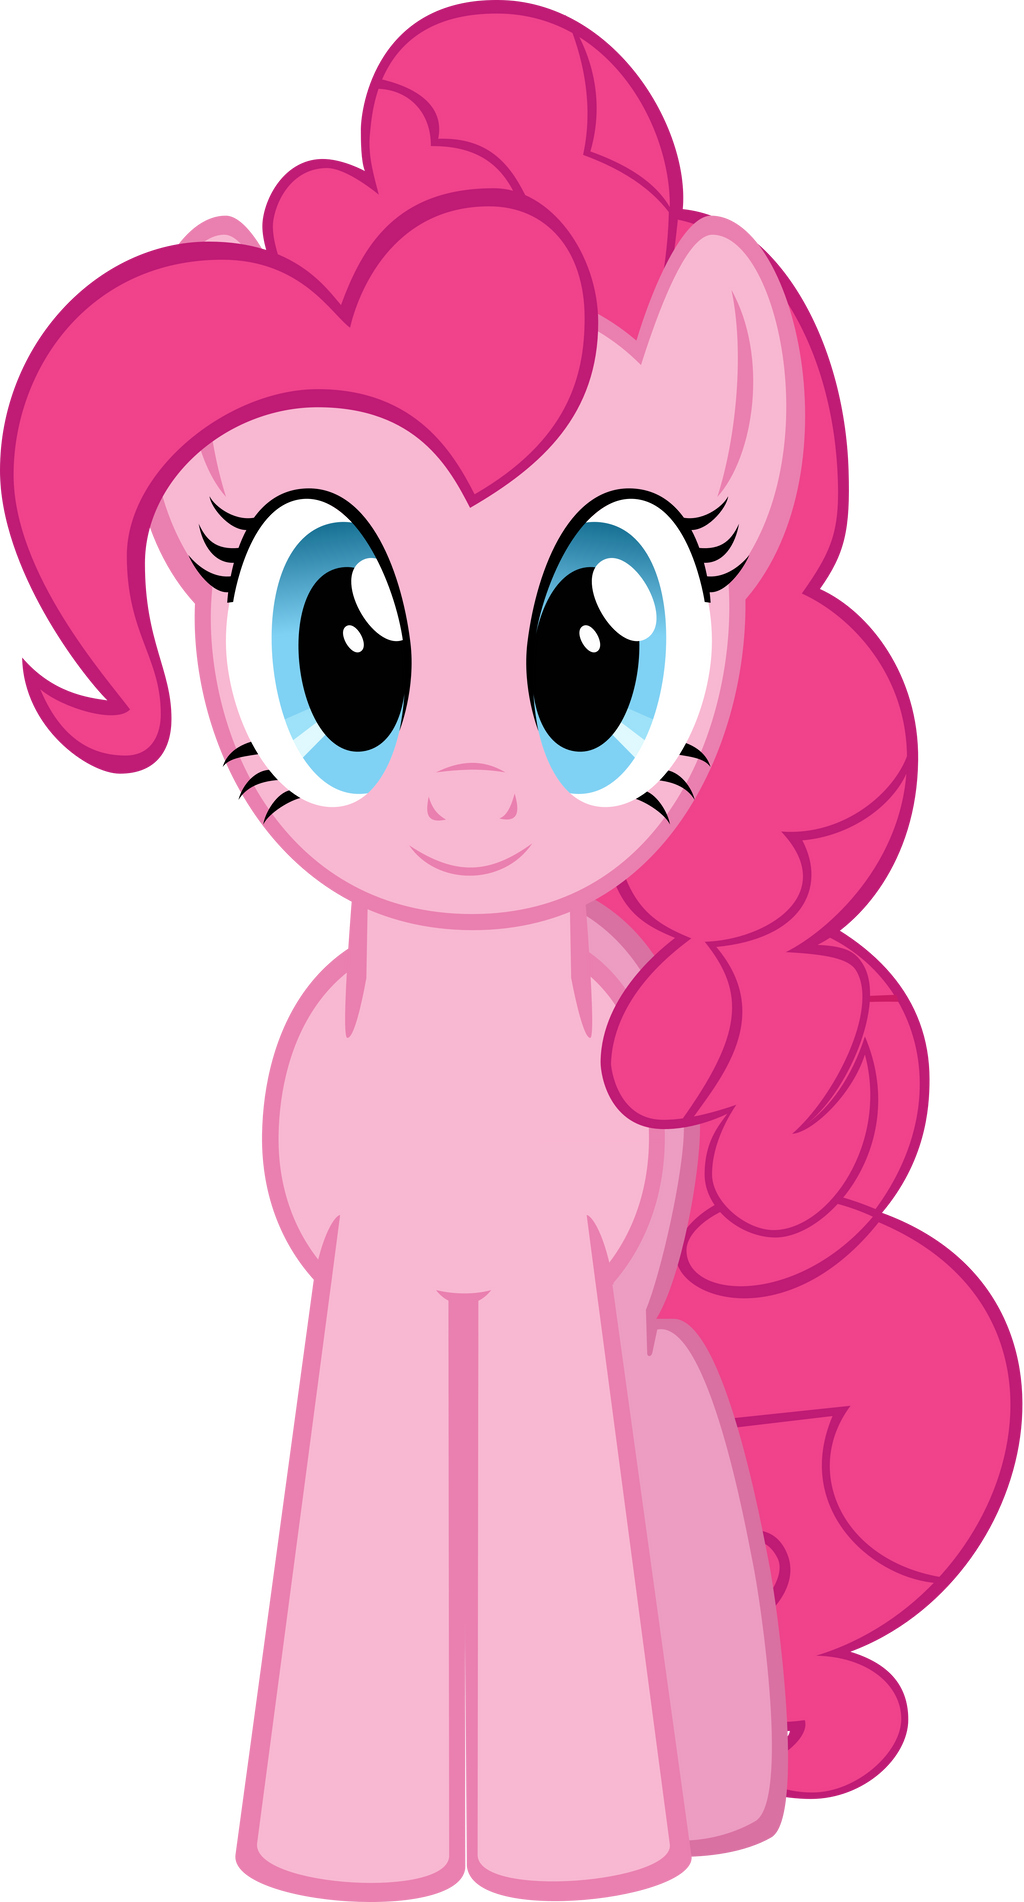 pinkie pie equestria girls vector | My Little Pony | Pinterest ...